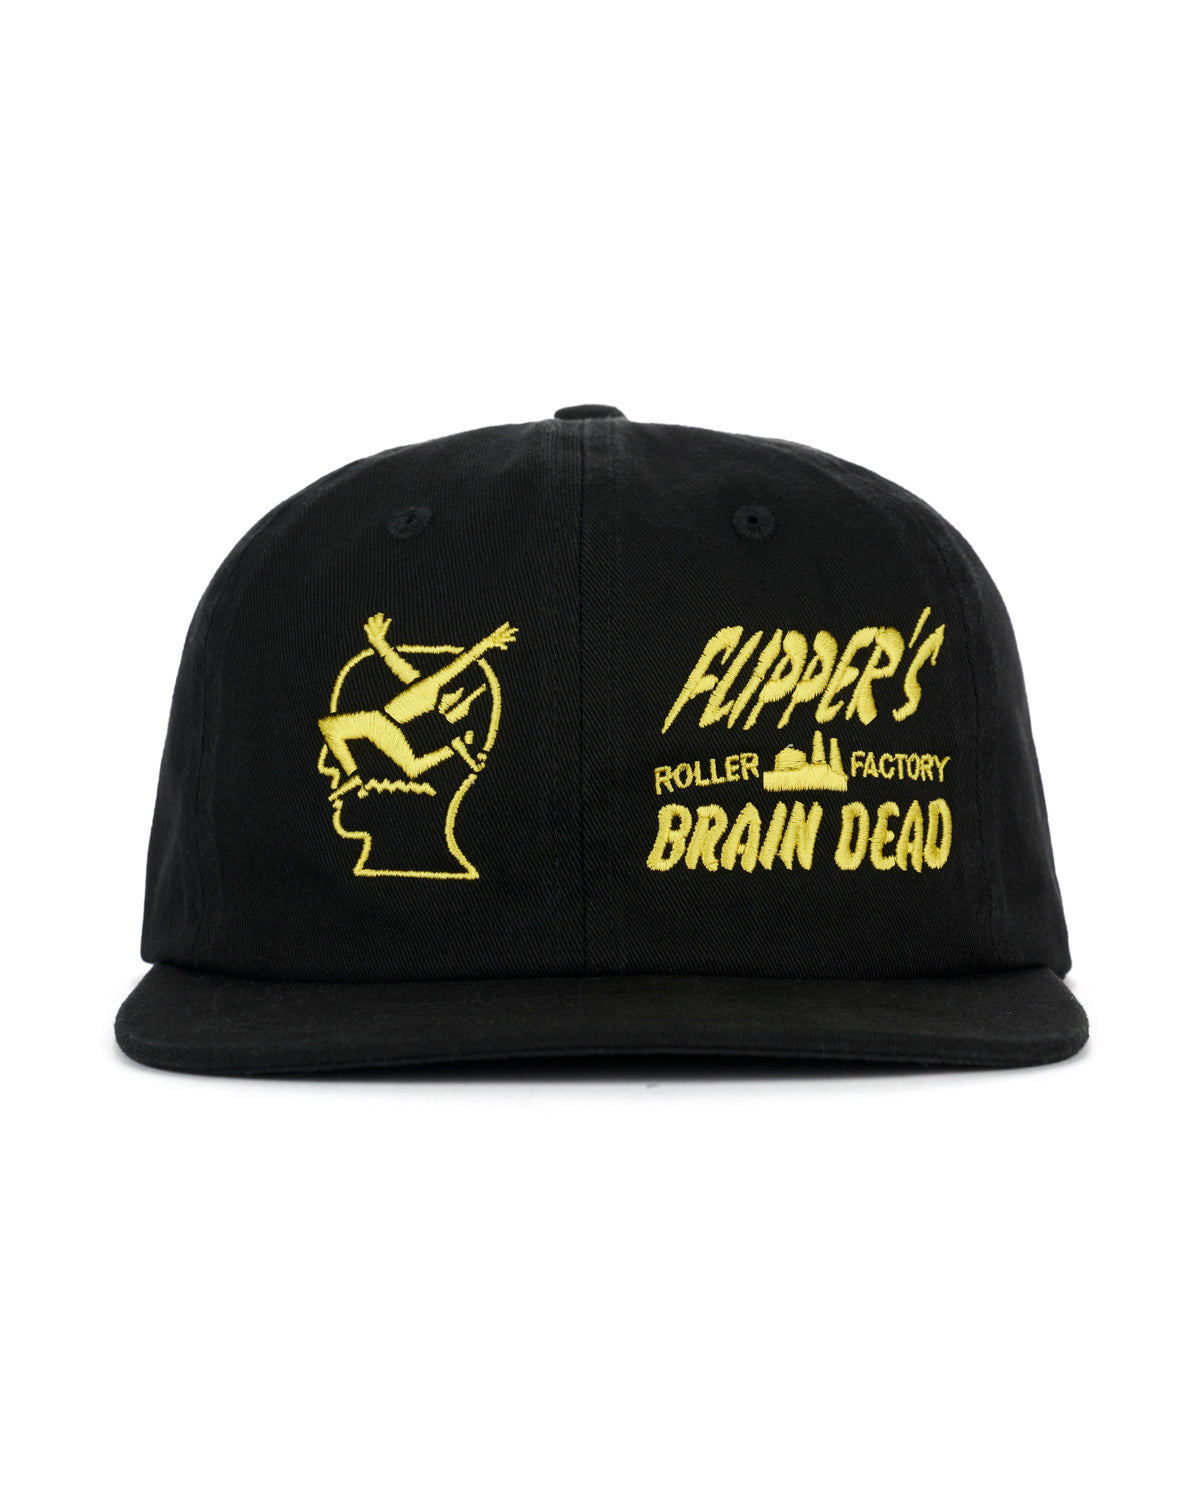 Brain Dead x Flippers Factory Hat - Black 1